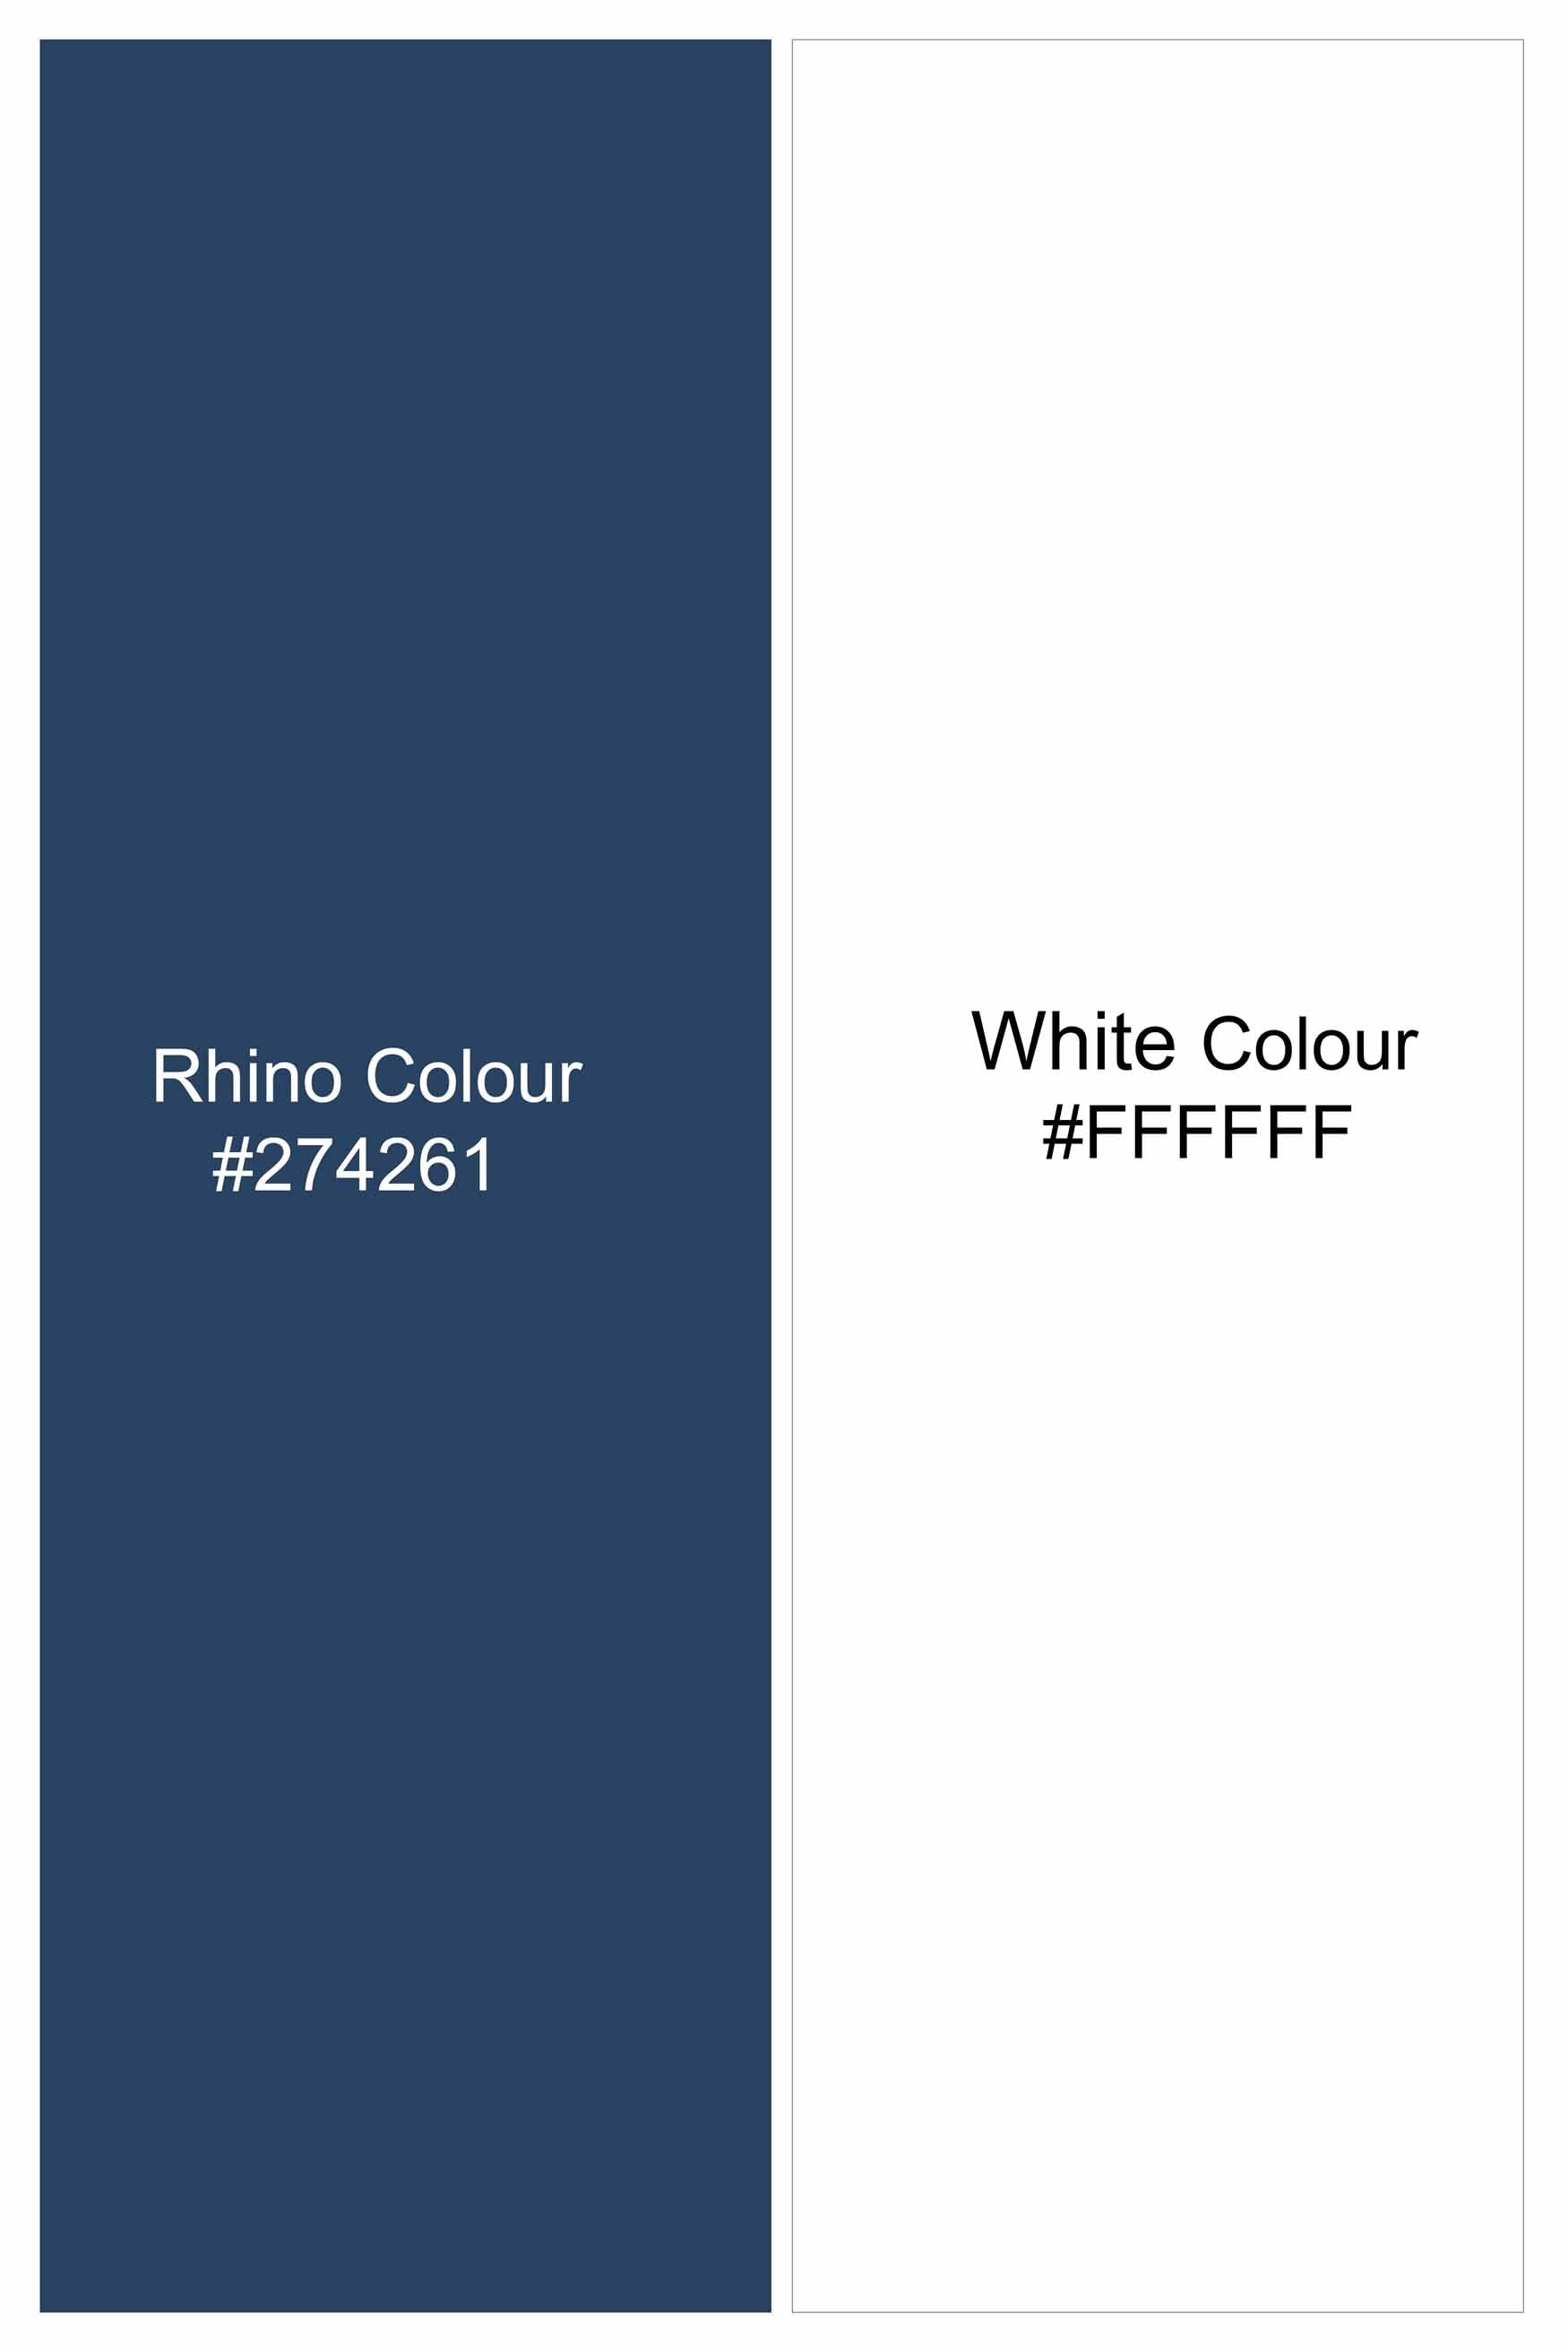 Rhino Blue and White Paisley Printed Royal Oxford Shirt 11444-M-38, 11444-M-H-38, 11444-M-39, 11444-M-H-39, 11444-M-40, 11444-M-H-40, 11444-M-42, 11444-M-H-42, 11444-M-44, 11444-M-H-44, 11444-M-46, 11444-M-H-46, 11444-M-48, 11444-M-H-48, 11444-M-50, 11444-M-H-50, 11444-M-52, 11444-M-H-52